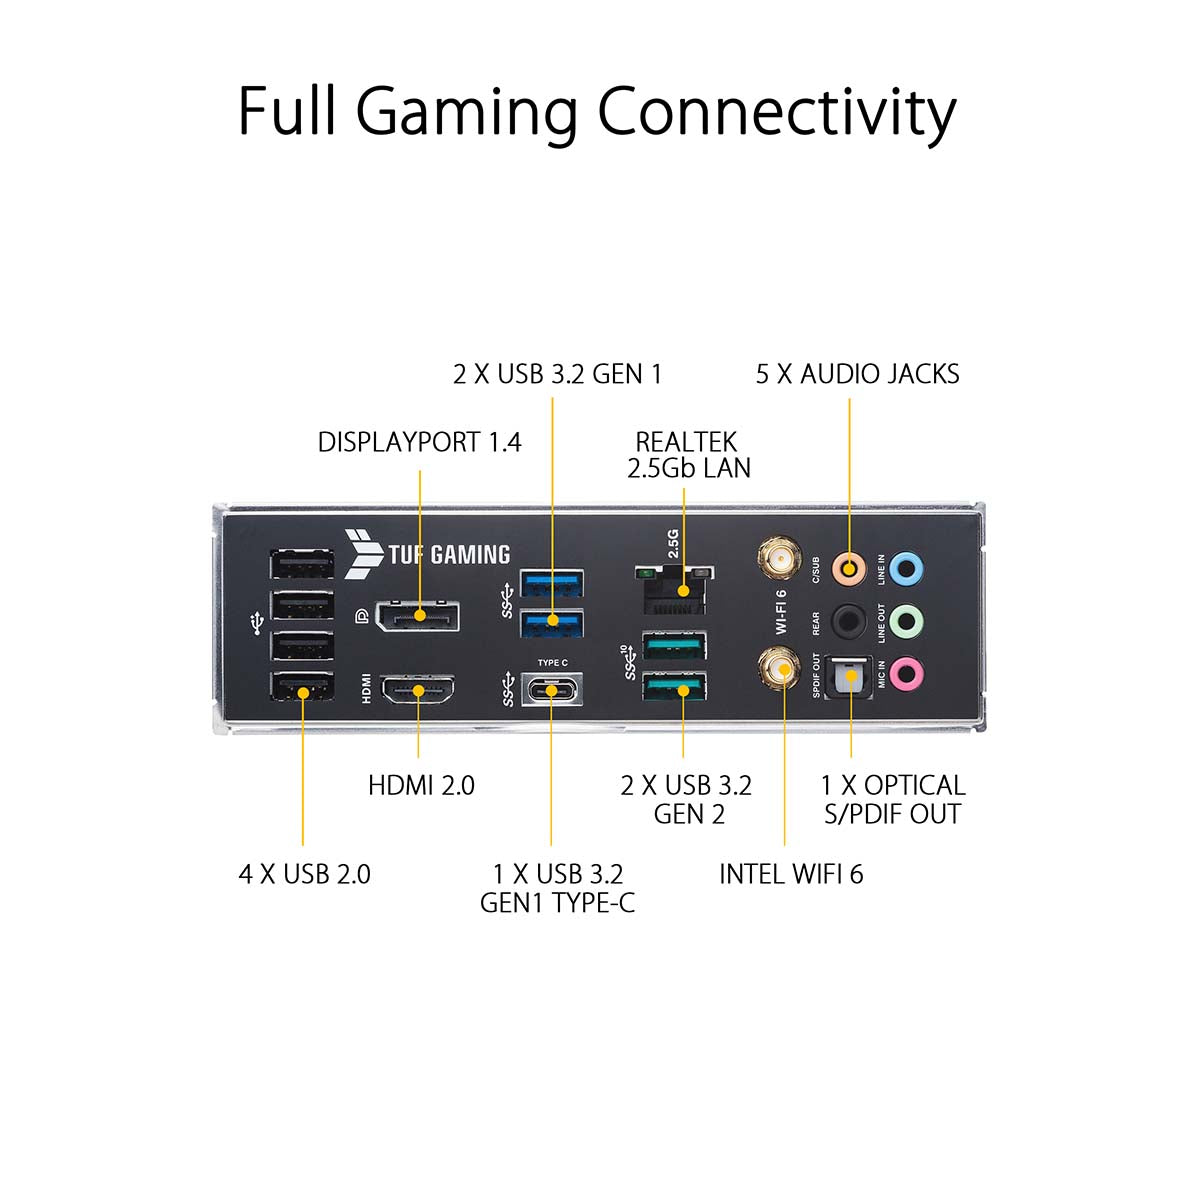 ASUS TUF गेमिंग B560M-Plus WiFi LGA 1200 mATX मदरबोर्ड थंडरबोल्ट 4 और AI नॉइज़ कैंसलेशन के साथ